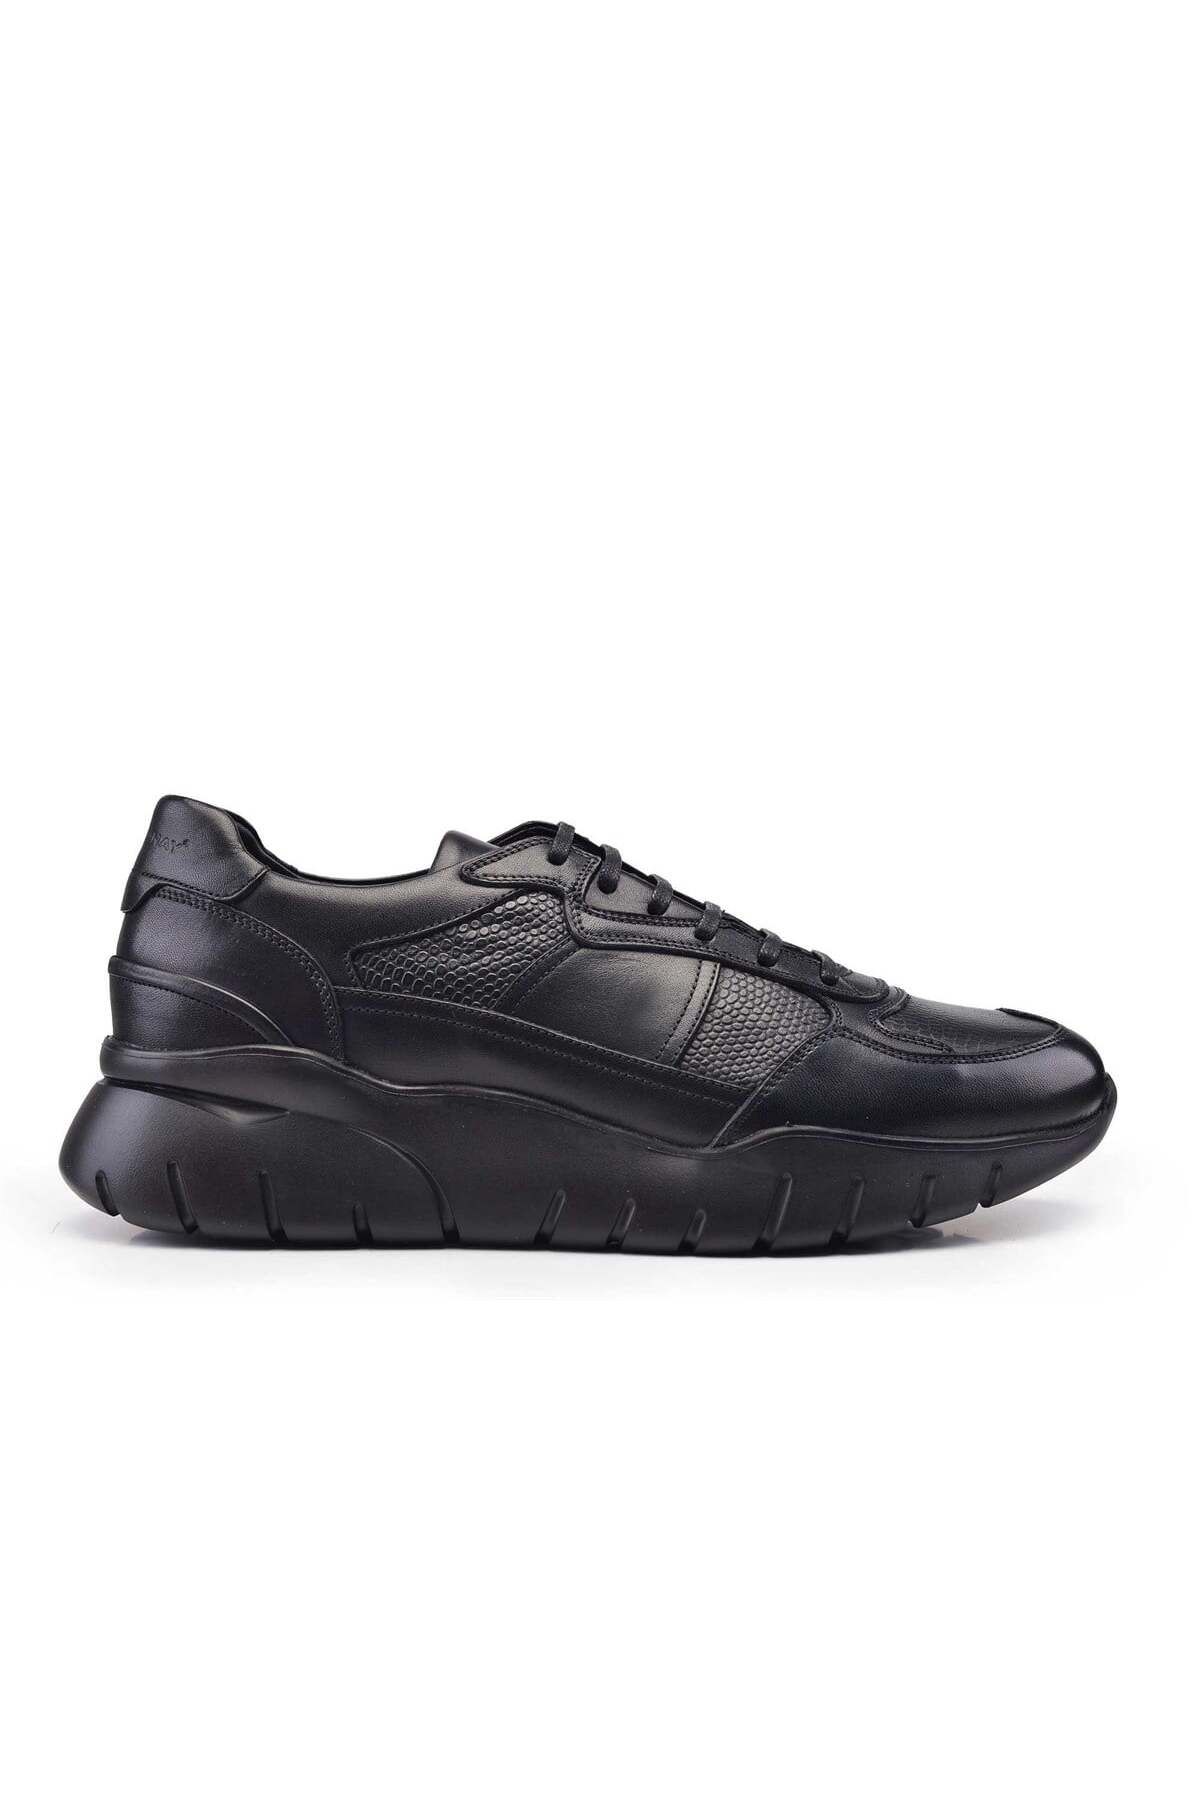 Nevzat Onay Siyah Str Baskı Sneaker Ayakkabı -11008-